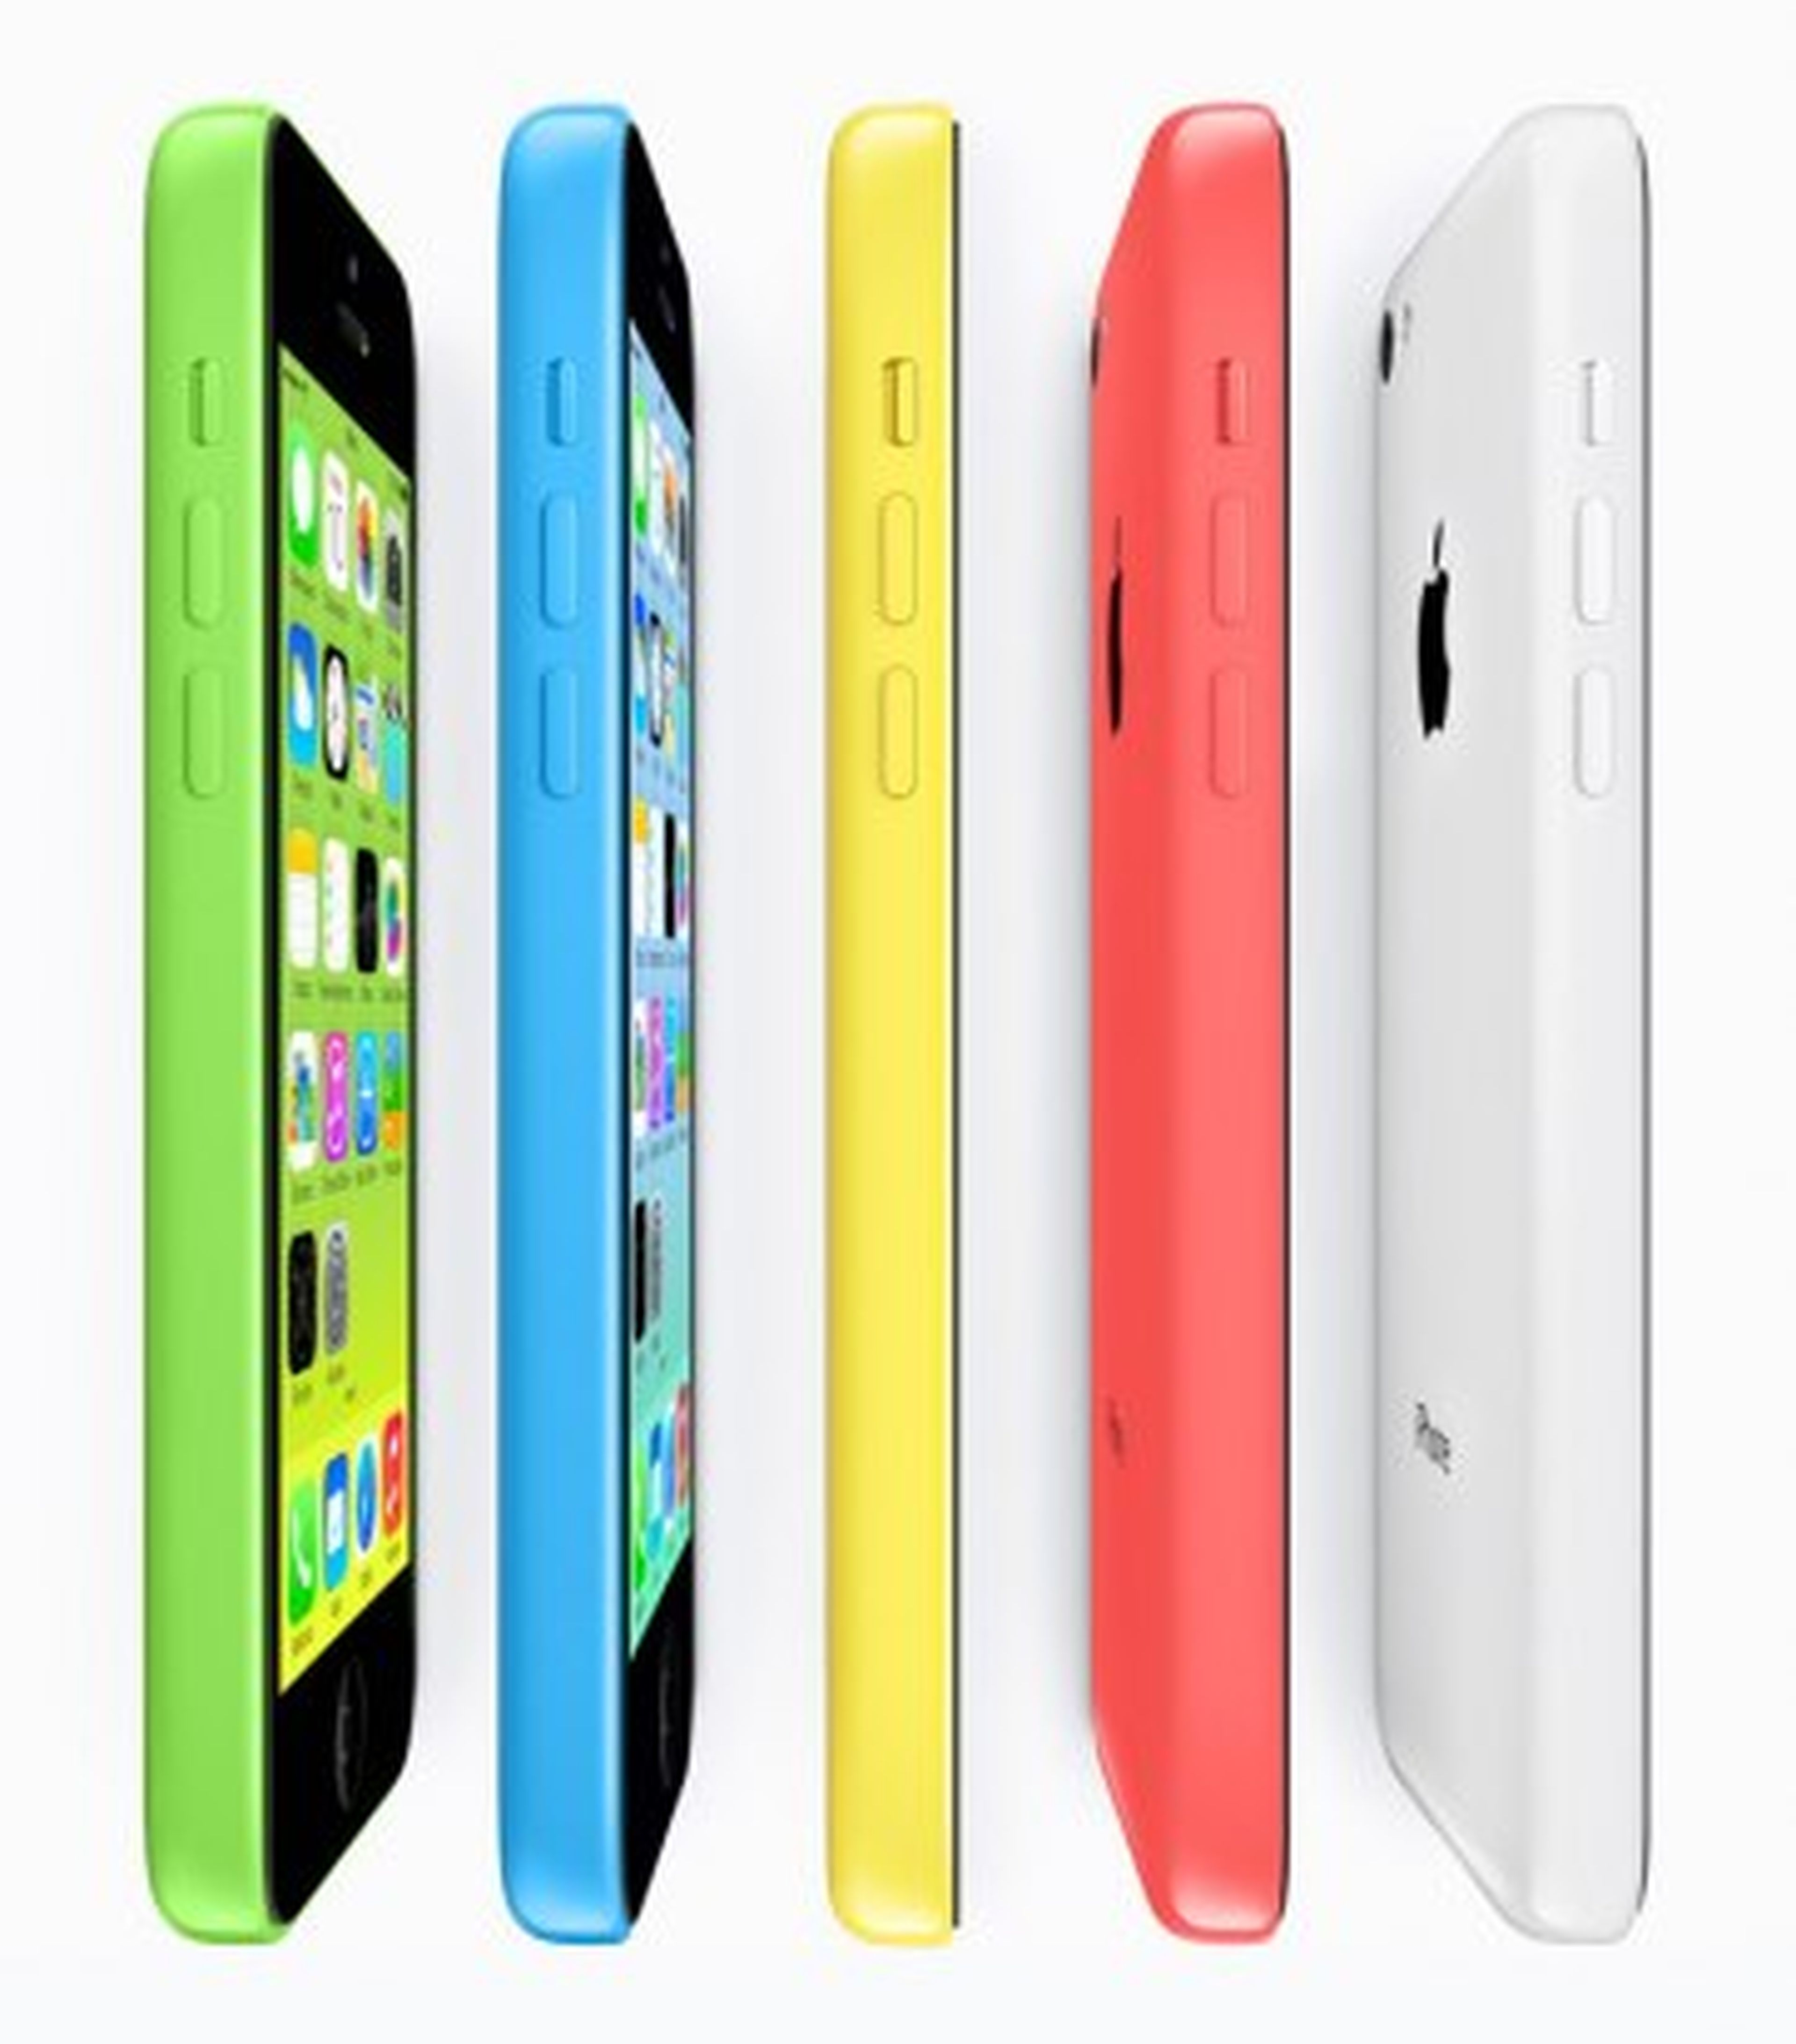 iPhone 5C disponibilidad y precios